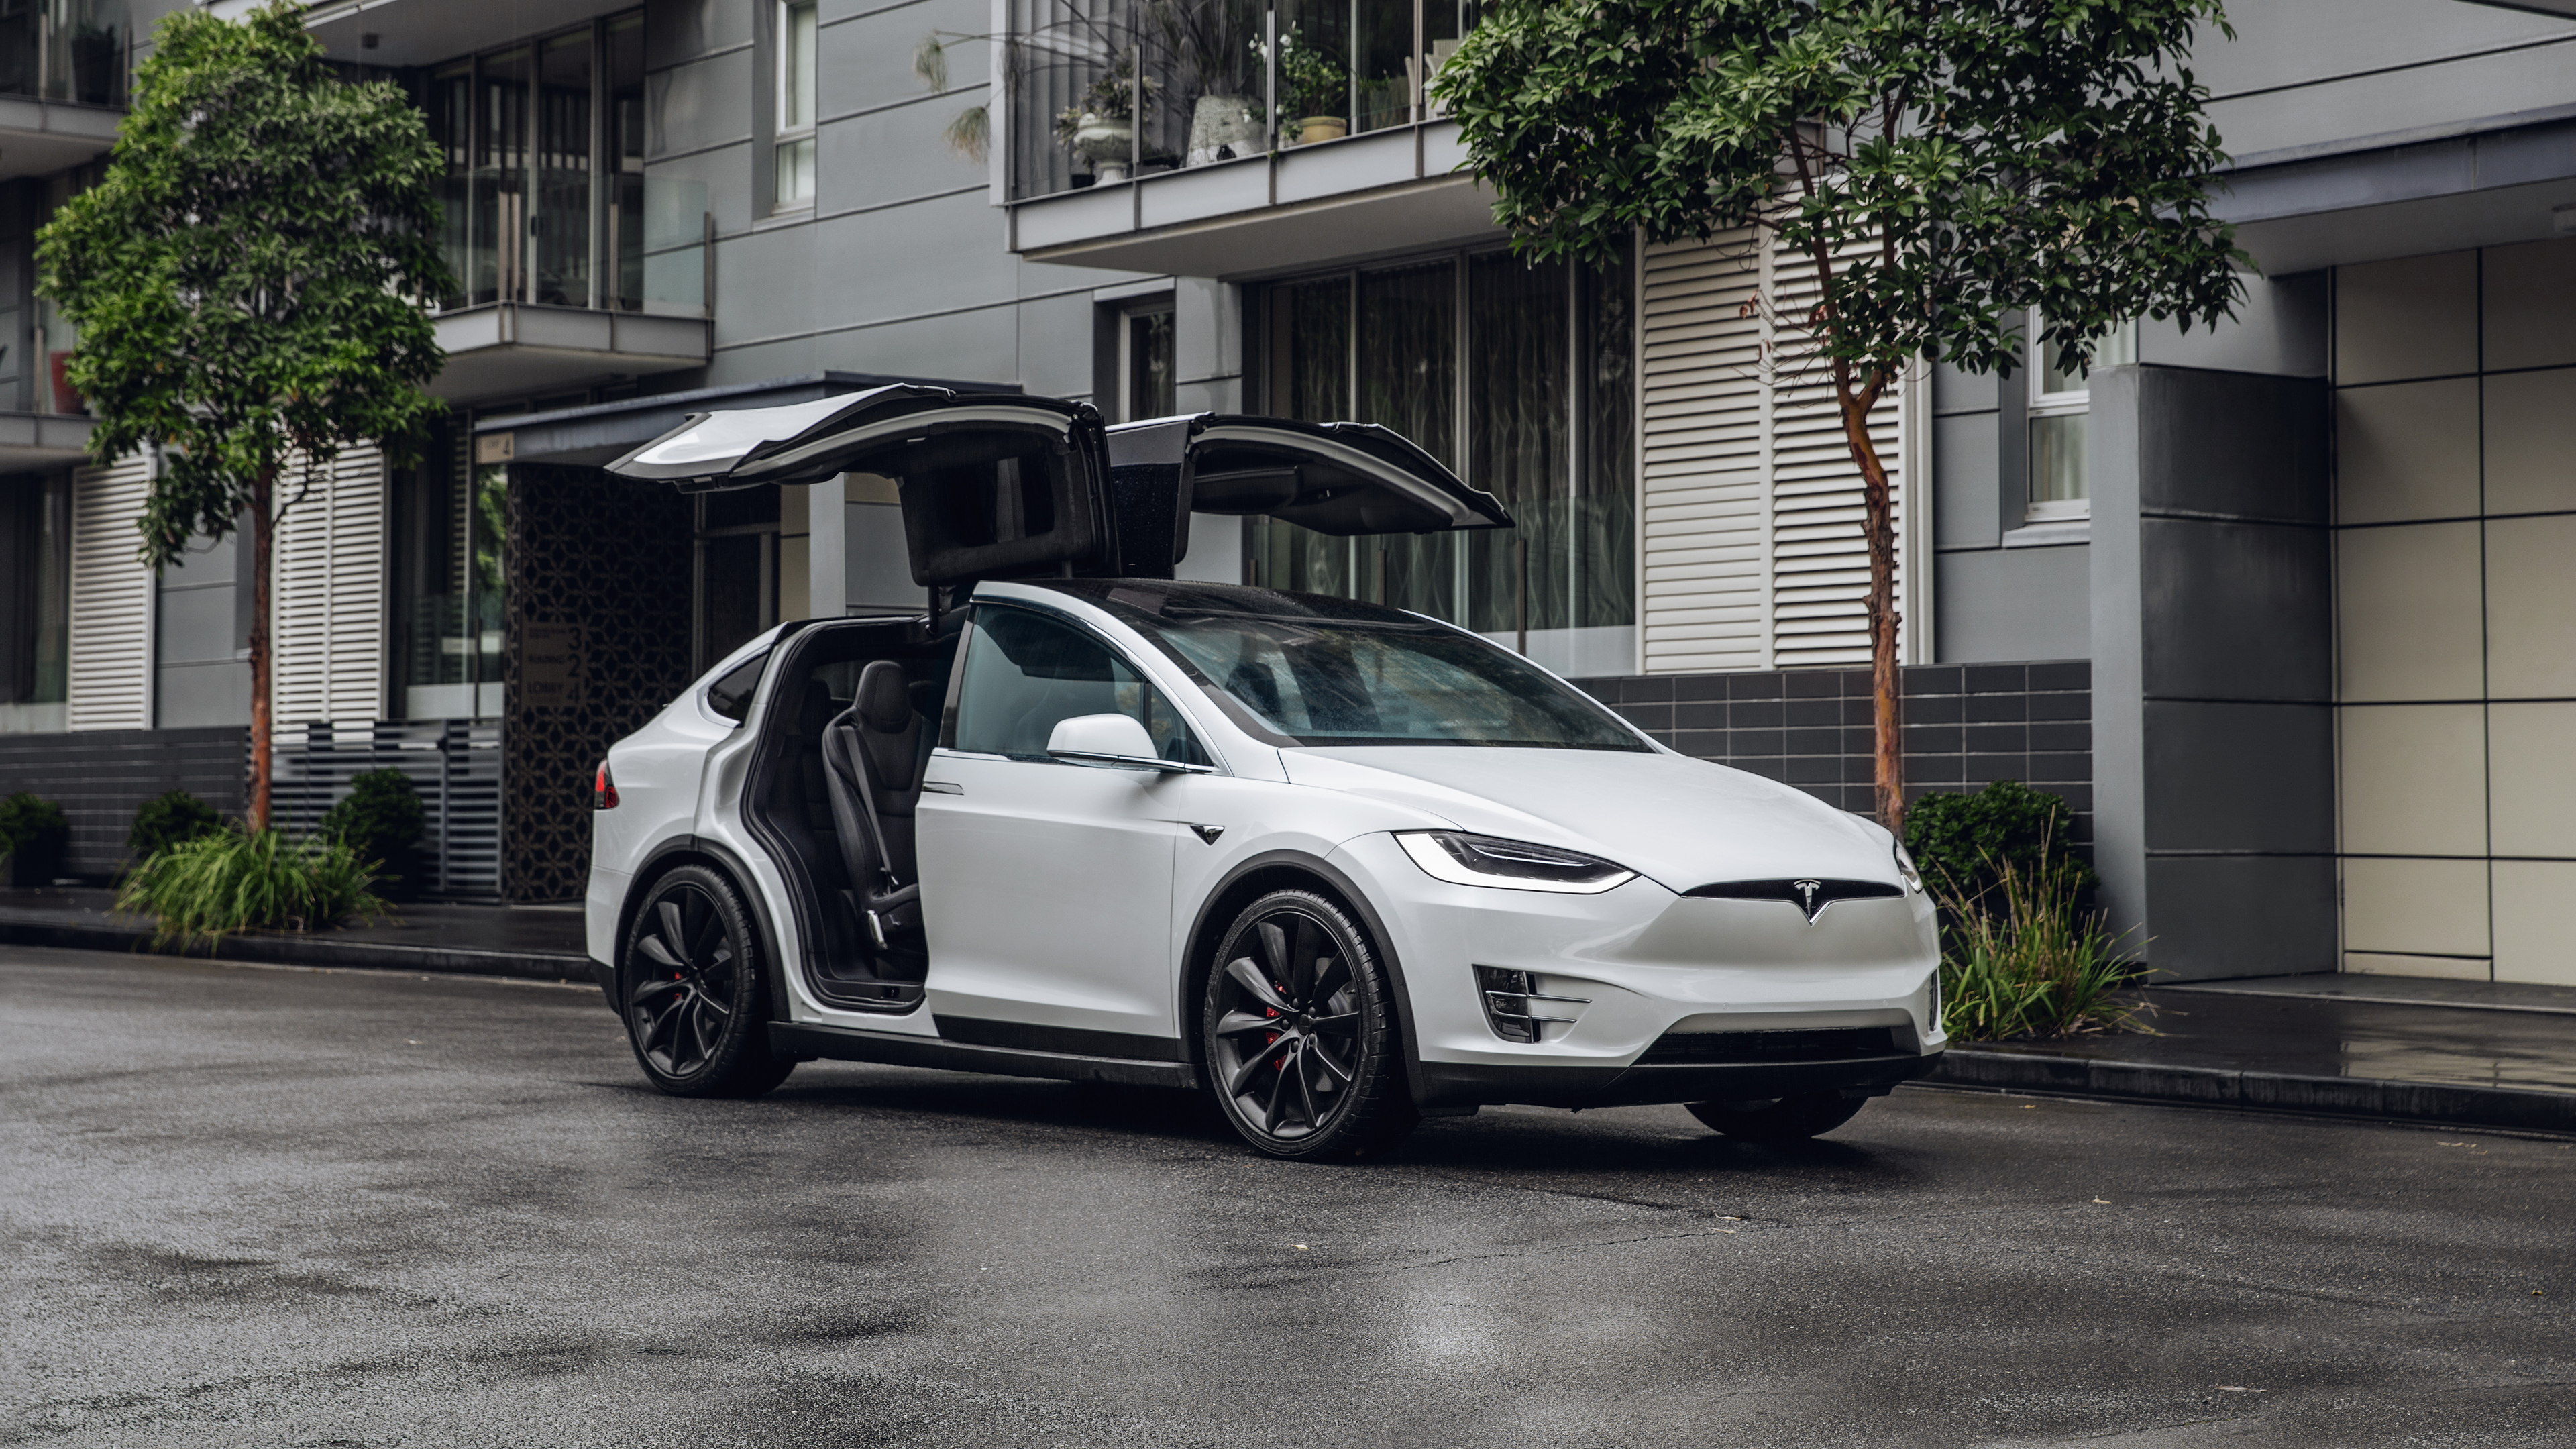 Tesla-model-X-Parked-City.jpg